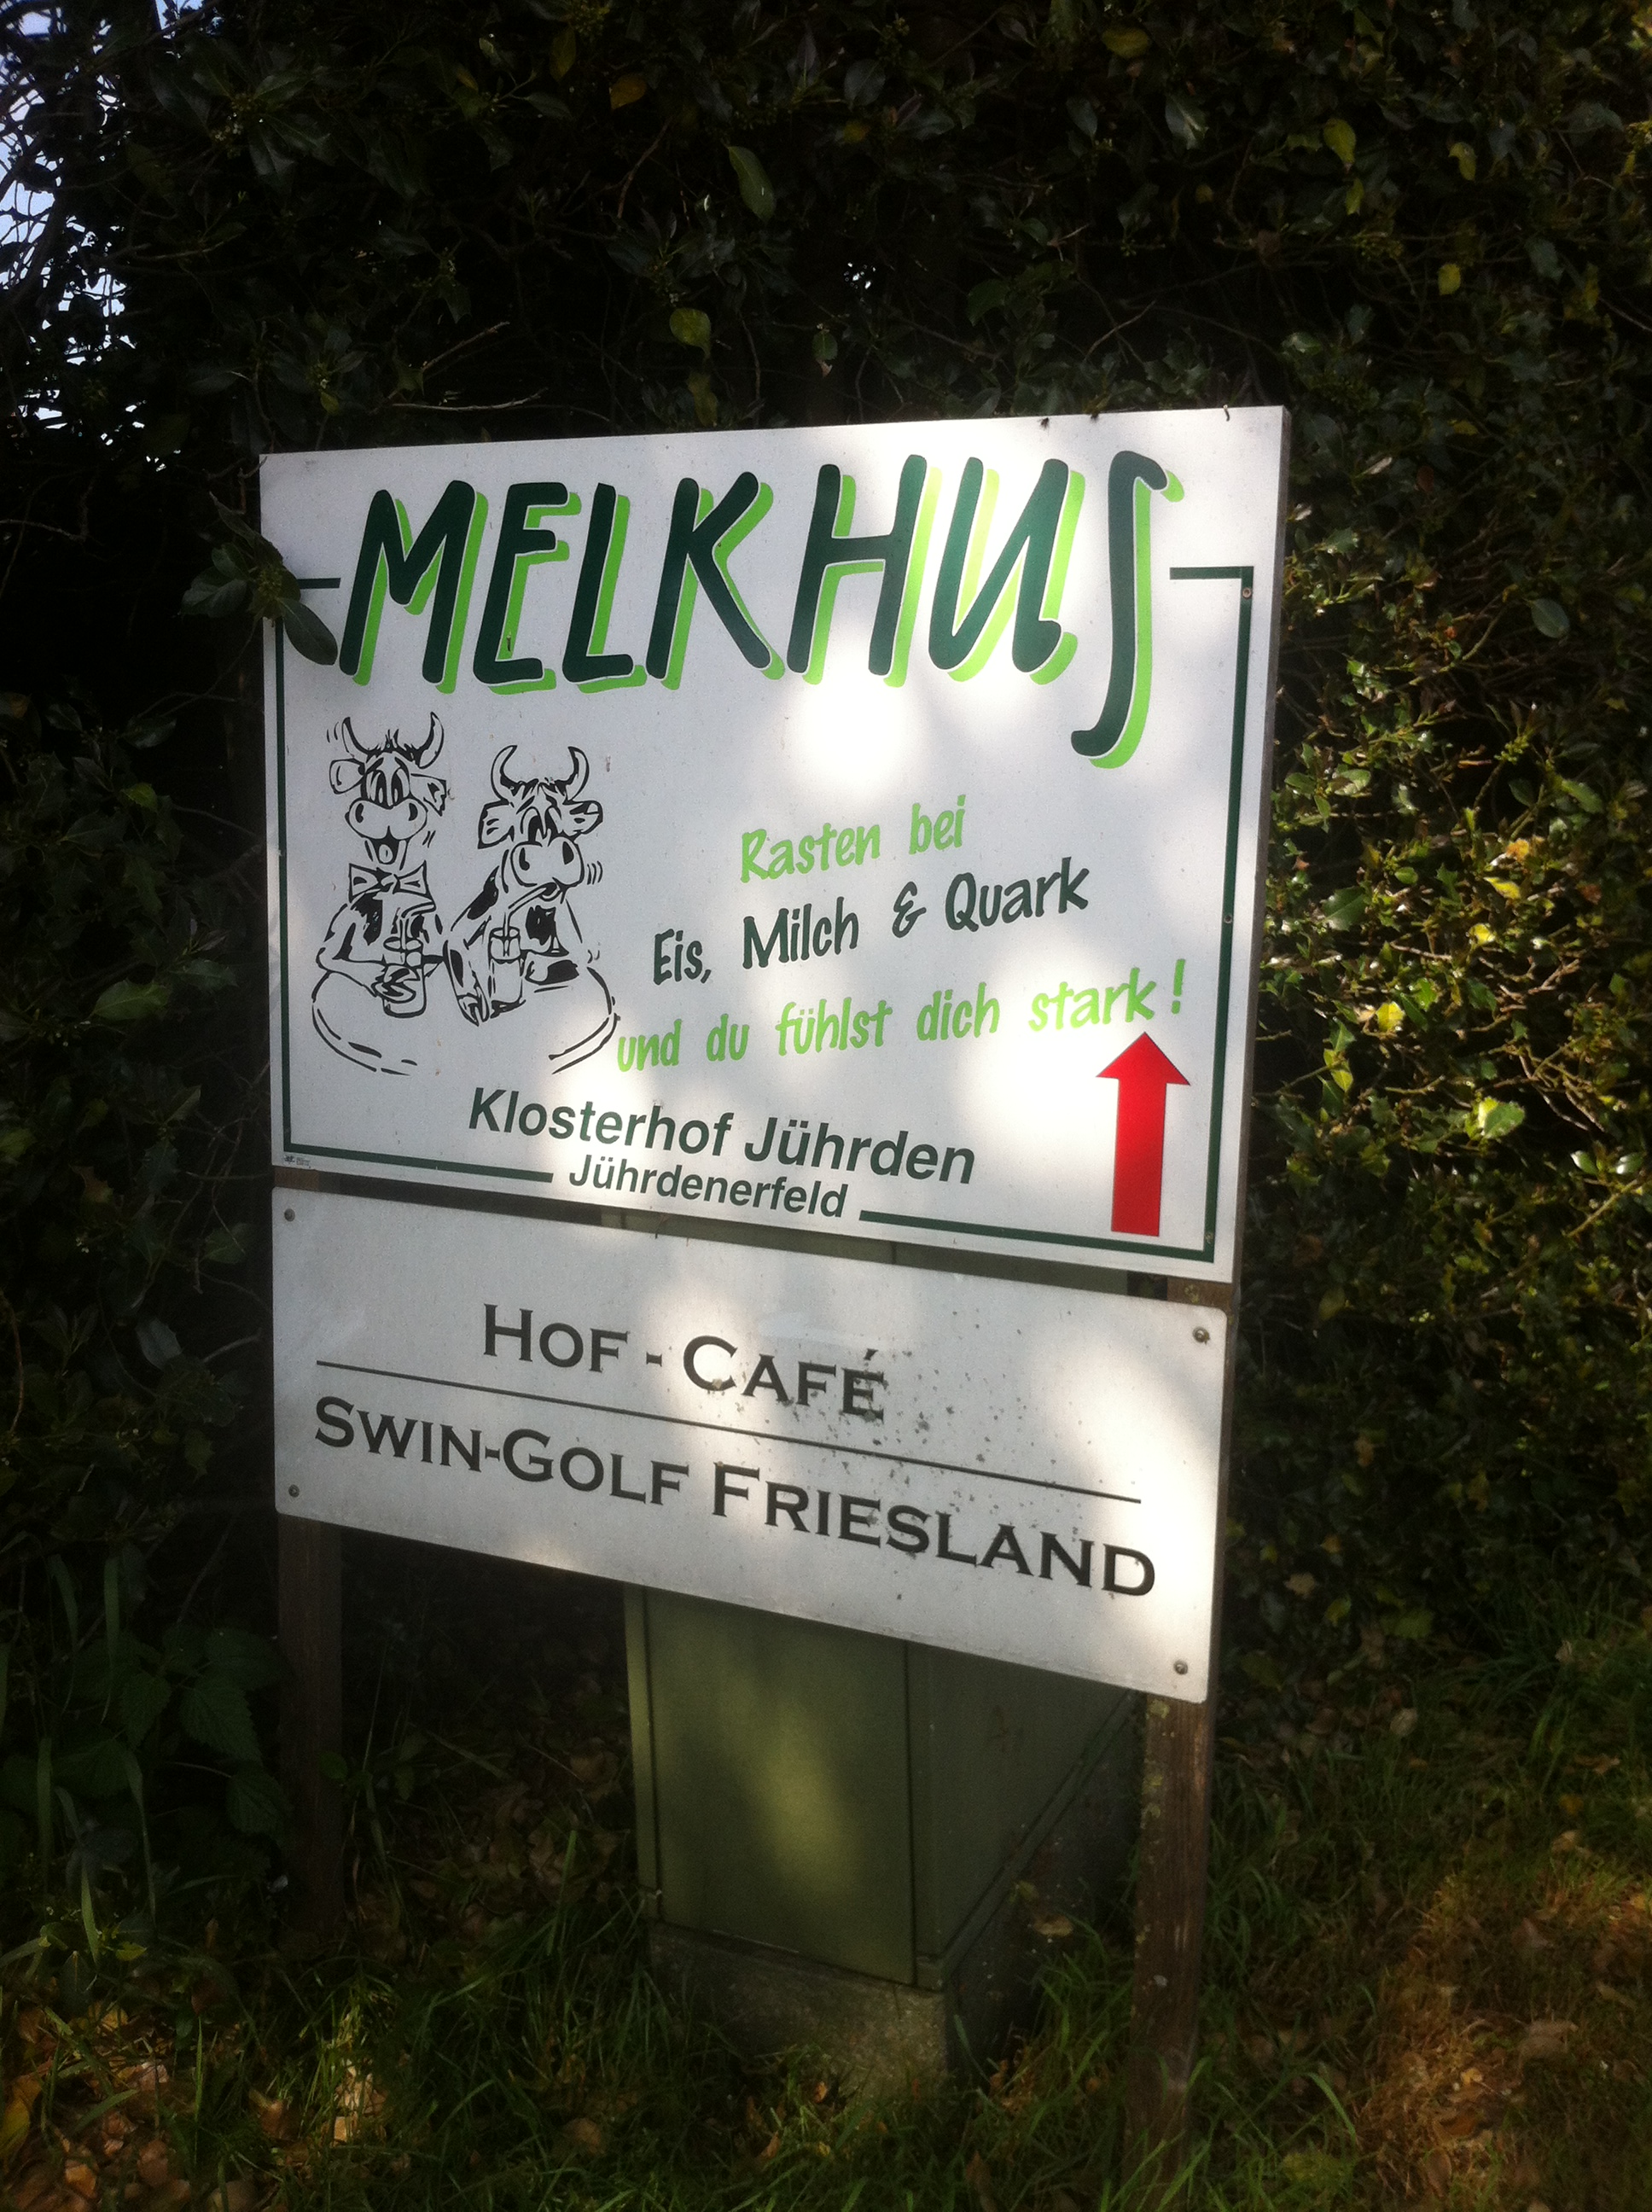 Hinweis zum Melkhus - Klosterhof Jührden